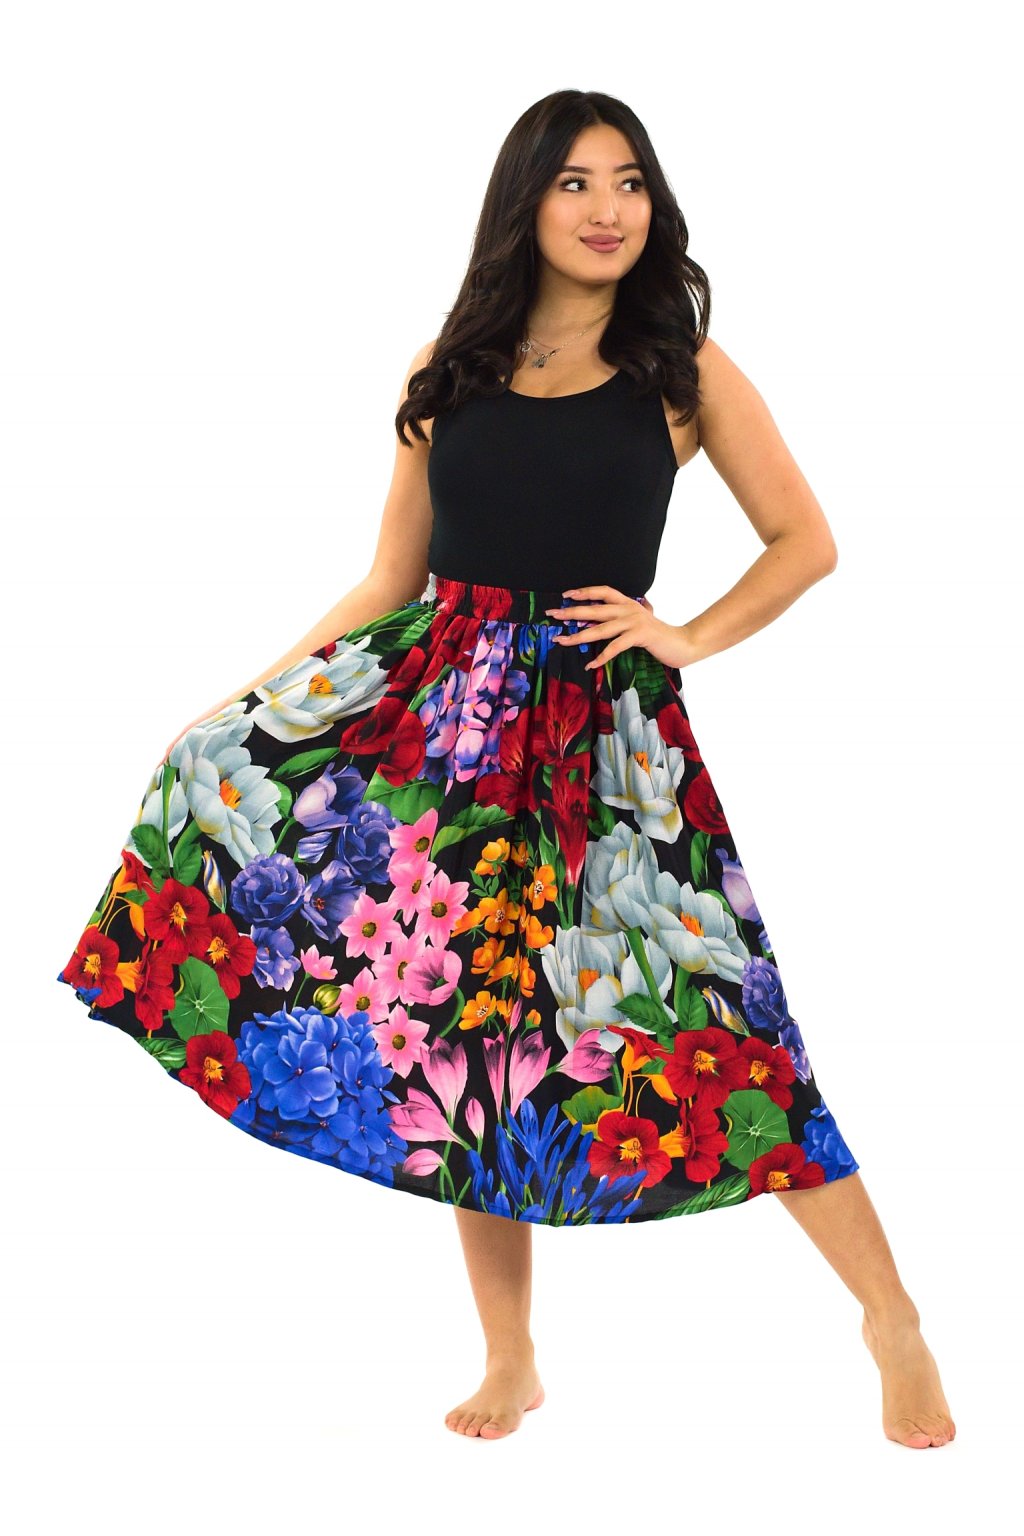 Kolová maxi sukně s kapsami Botanica - černá s barvami